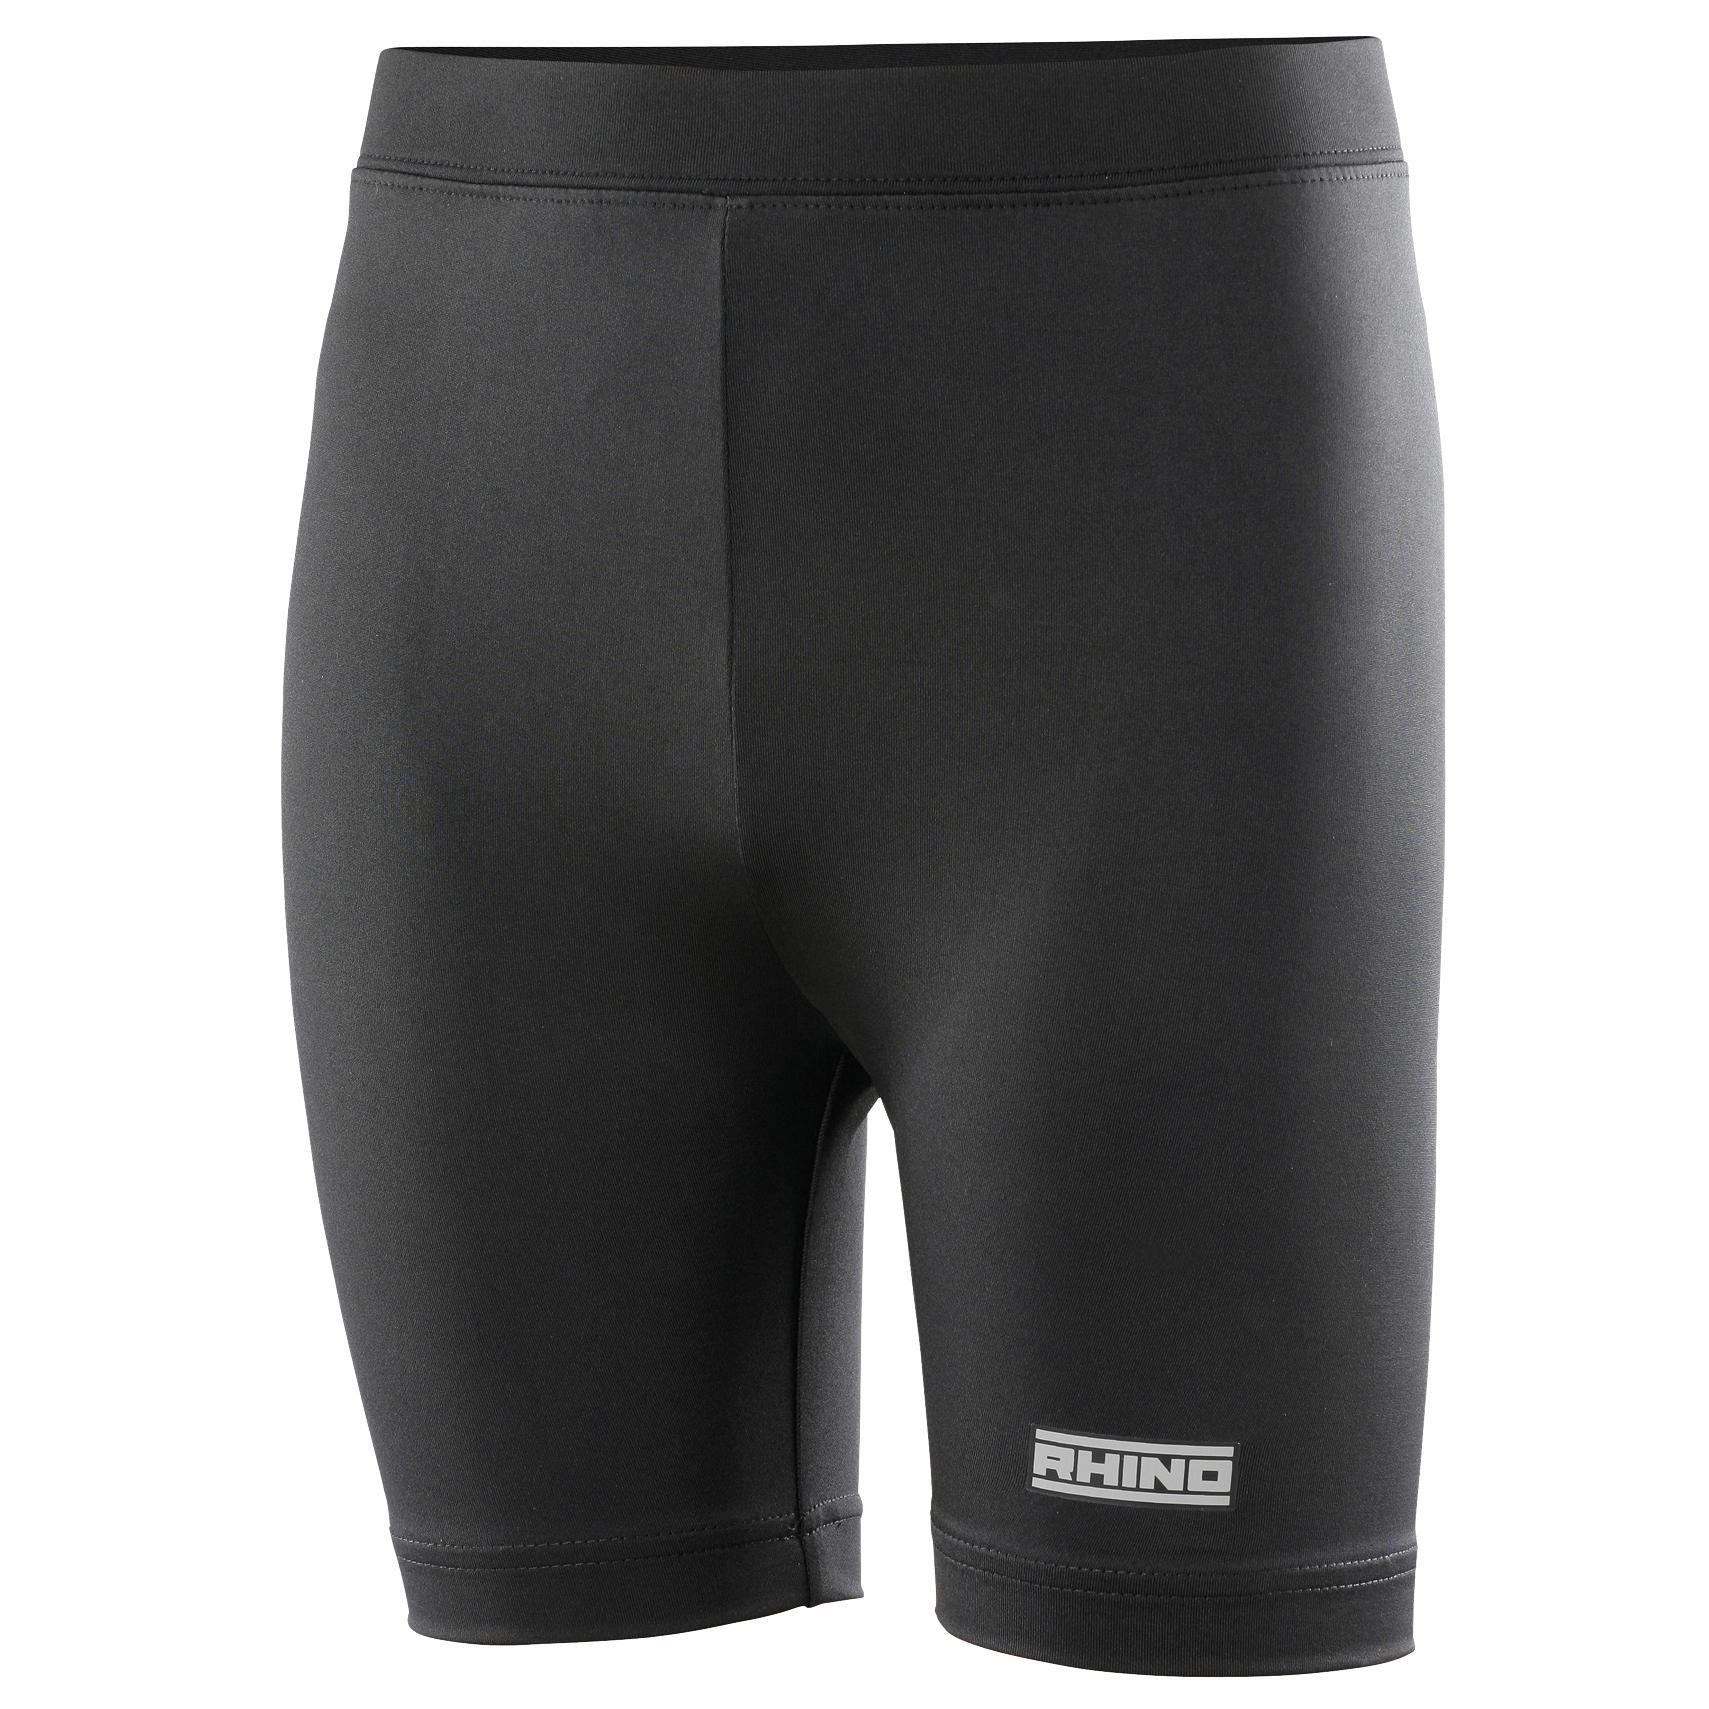 Rhino Childrens Boys Thermal Underwear Sports Base Layer Shorts (Black) (XSY)